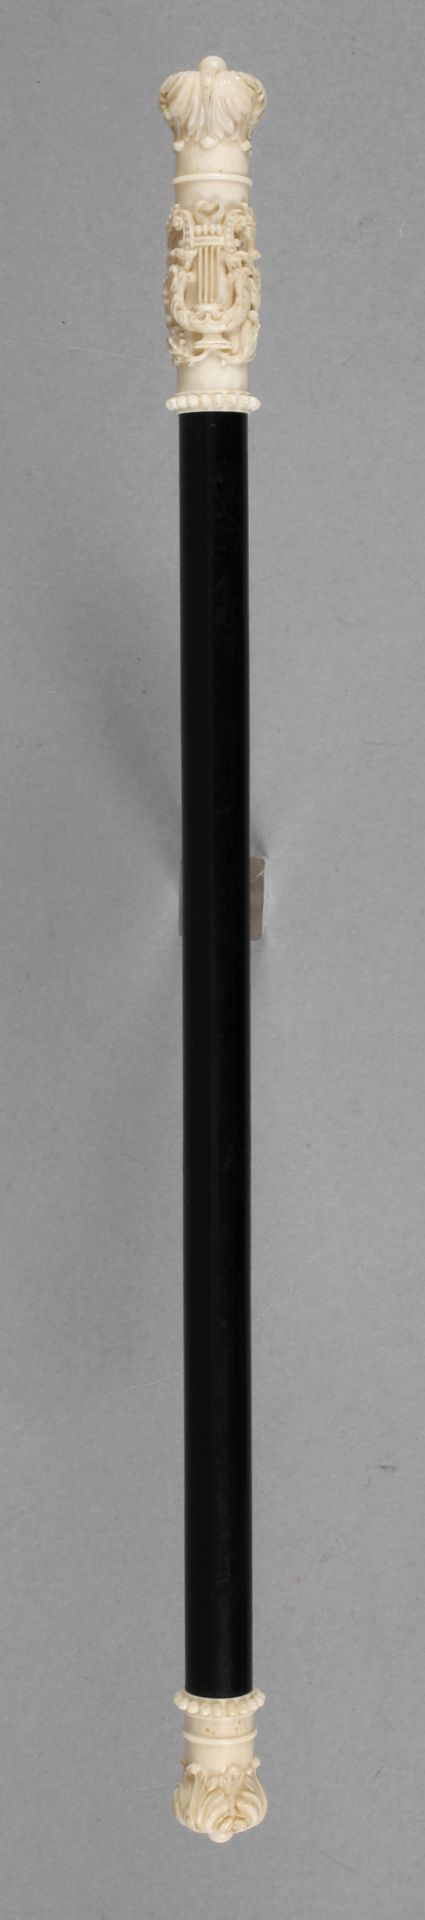 Taktstock Elfenbein Anfang 20. Jh., schlankes, ebonisiertes Modell, verziert von beschnitztem